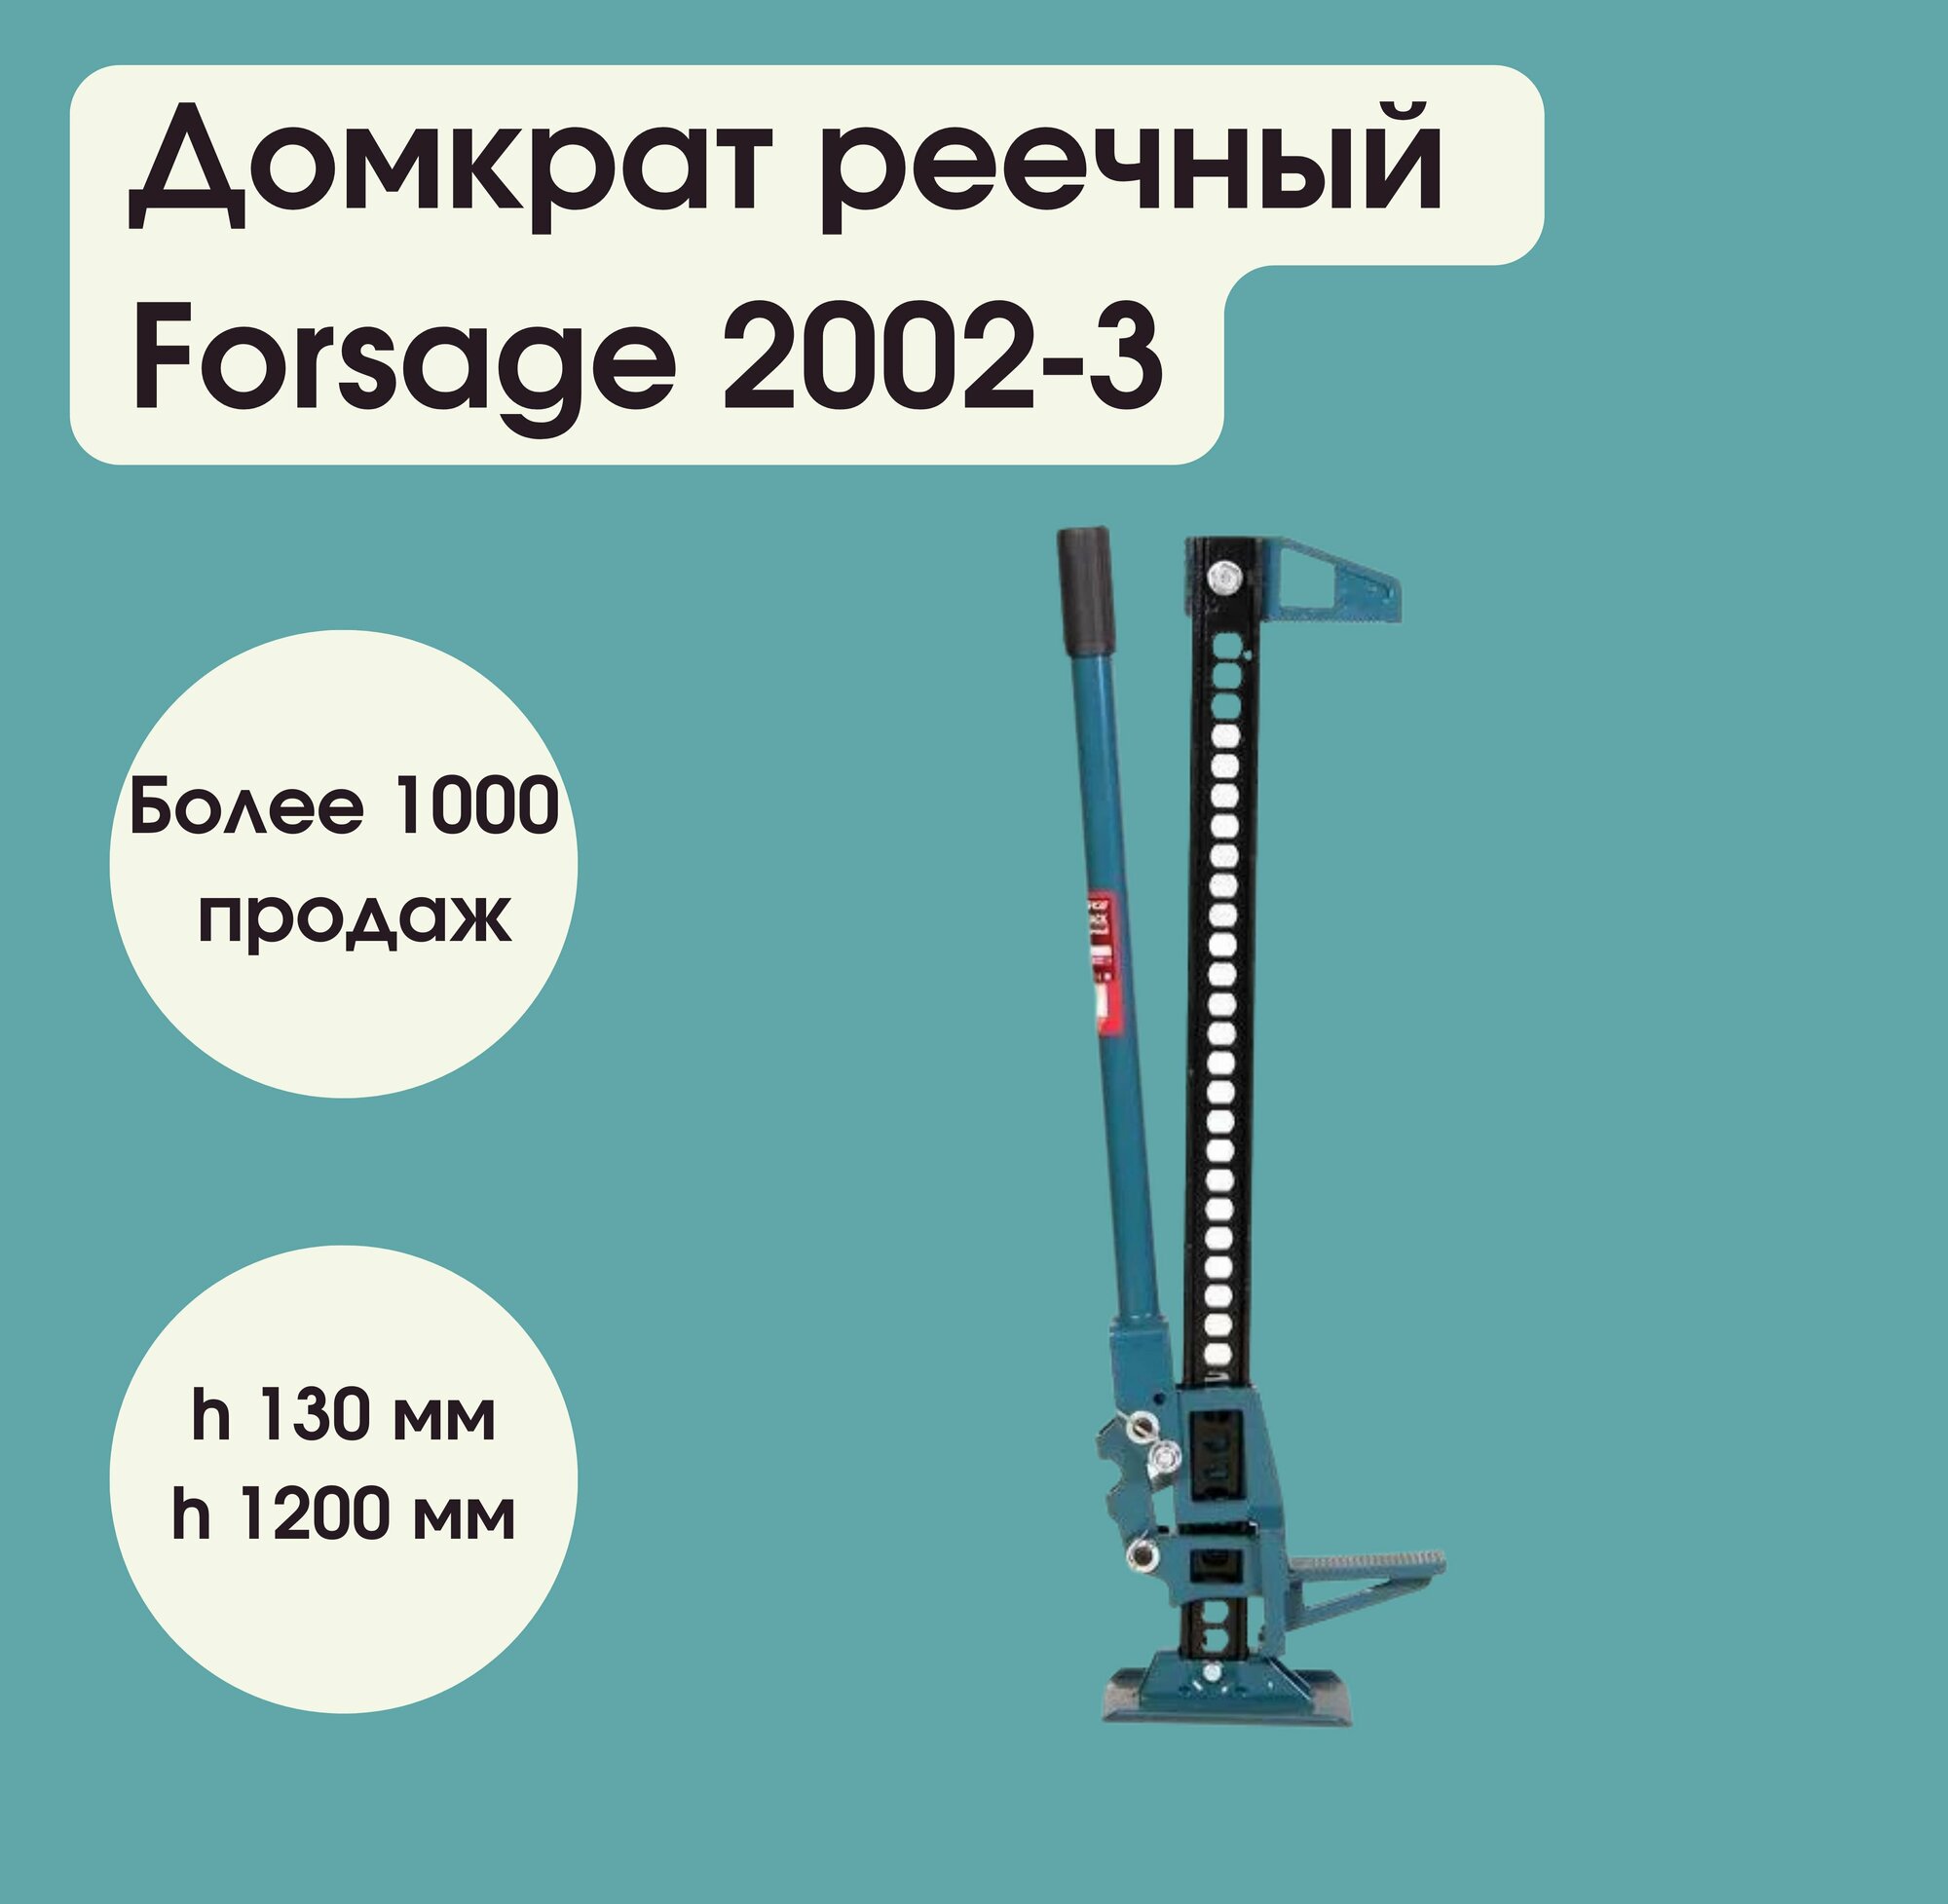 Домкрат реечный 3т 48"(высота подхвата - 130мм, высота подъема - 1200мм) Forsage F-2002-3